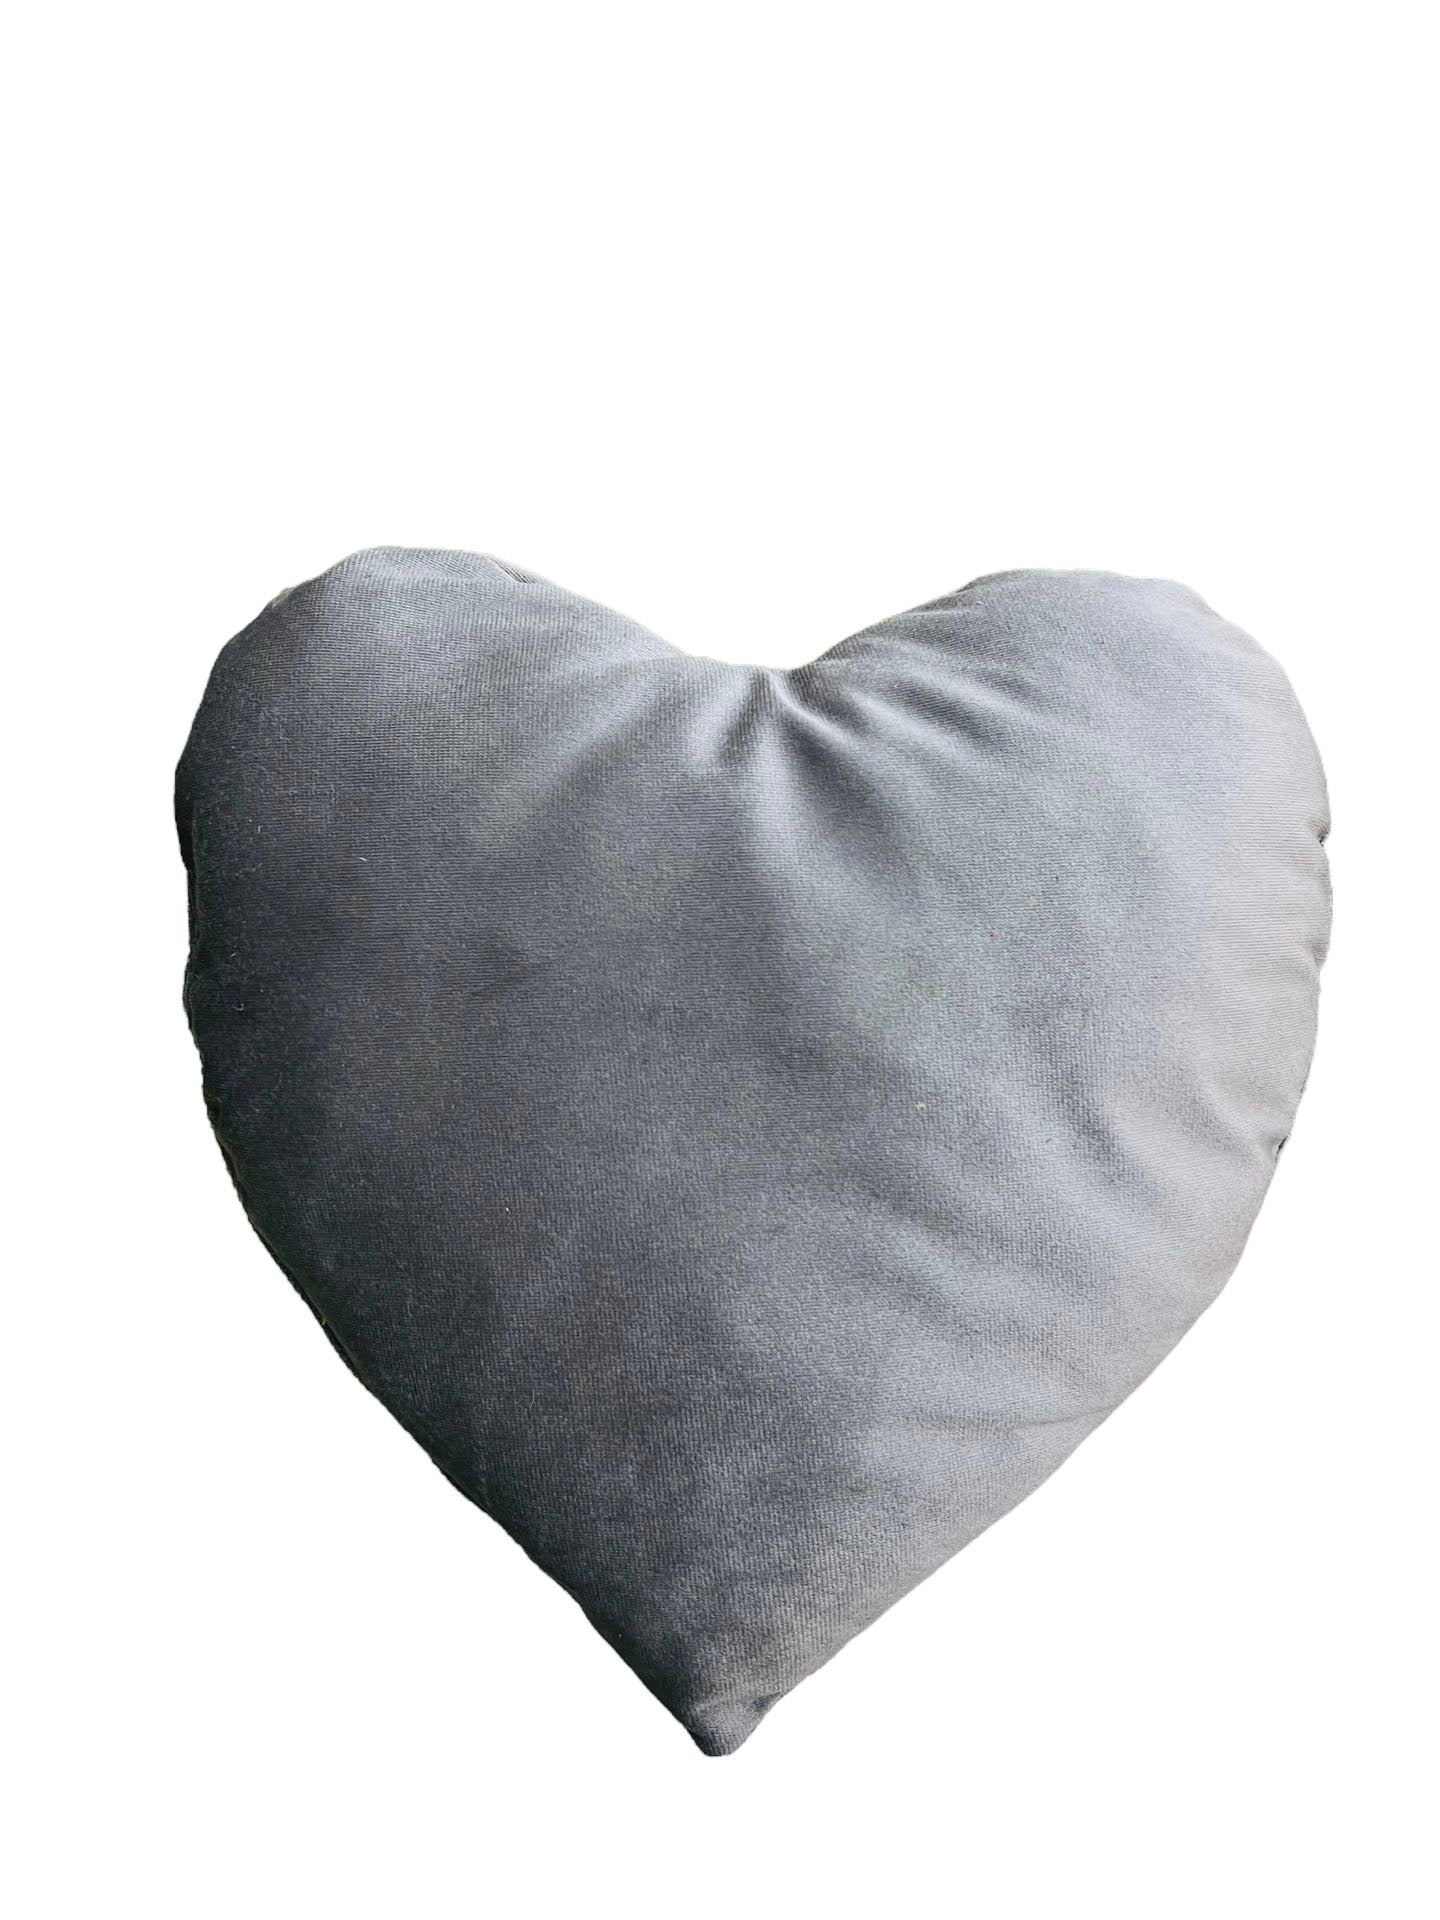 Heart shape pet pillow ♥️